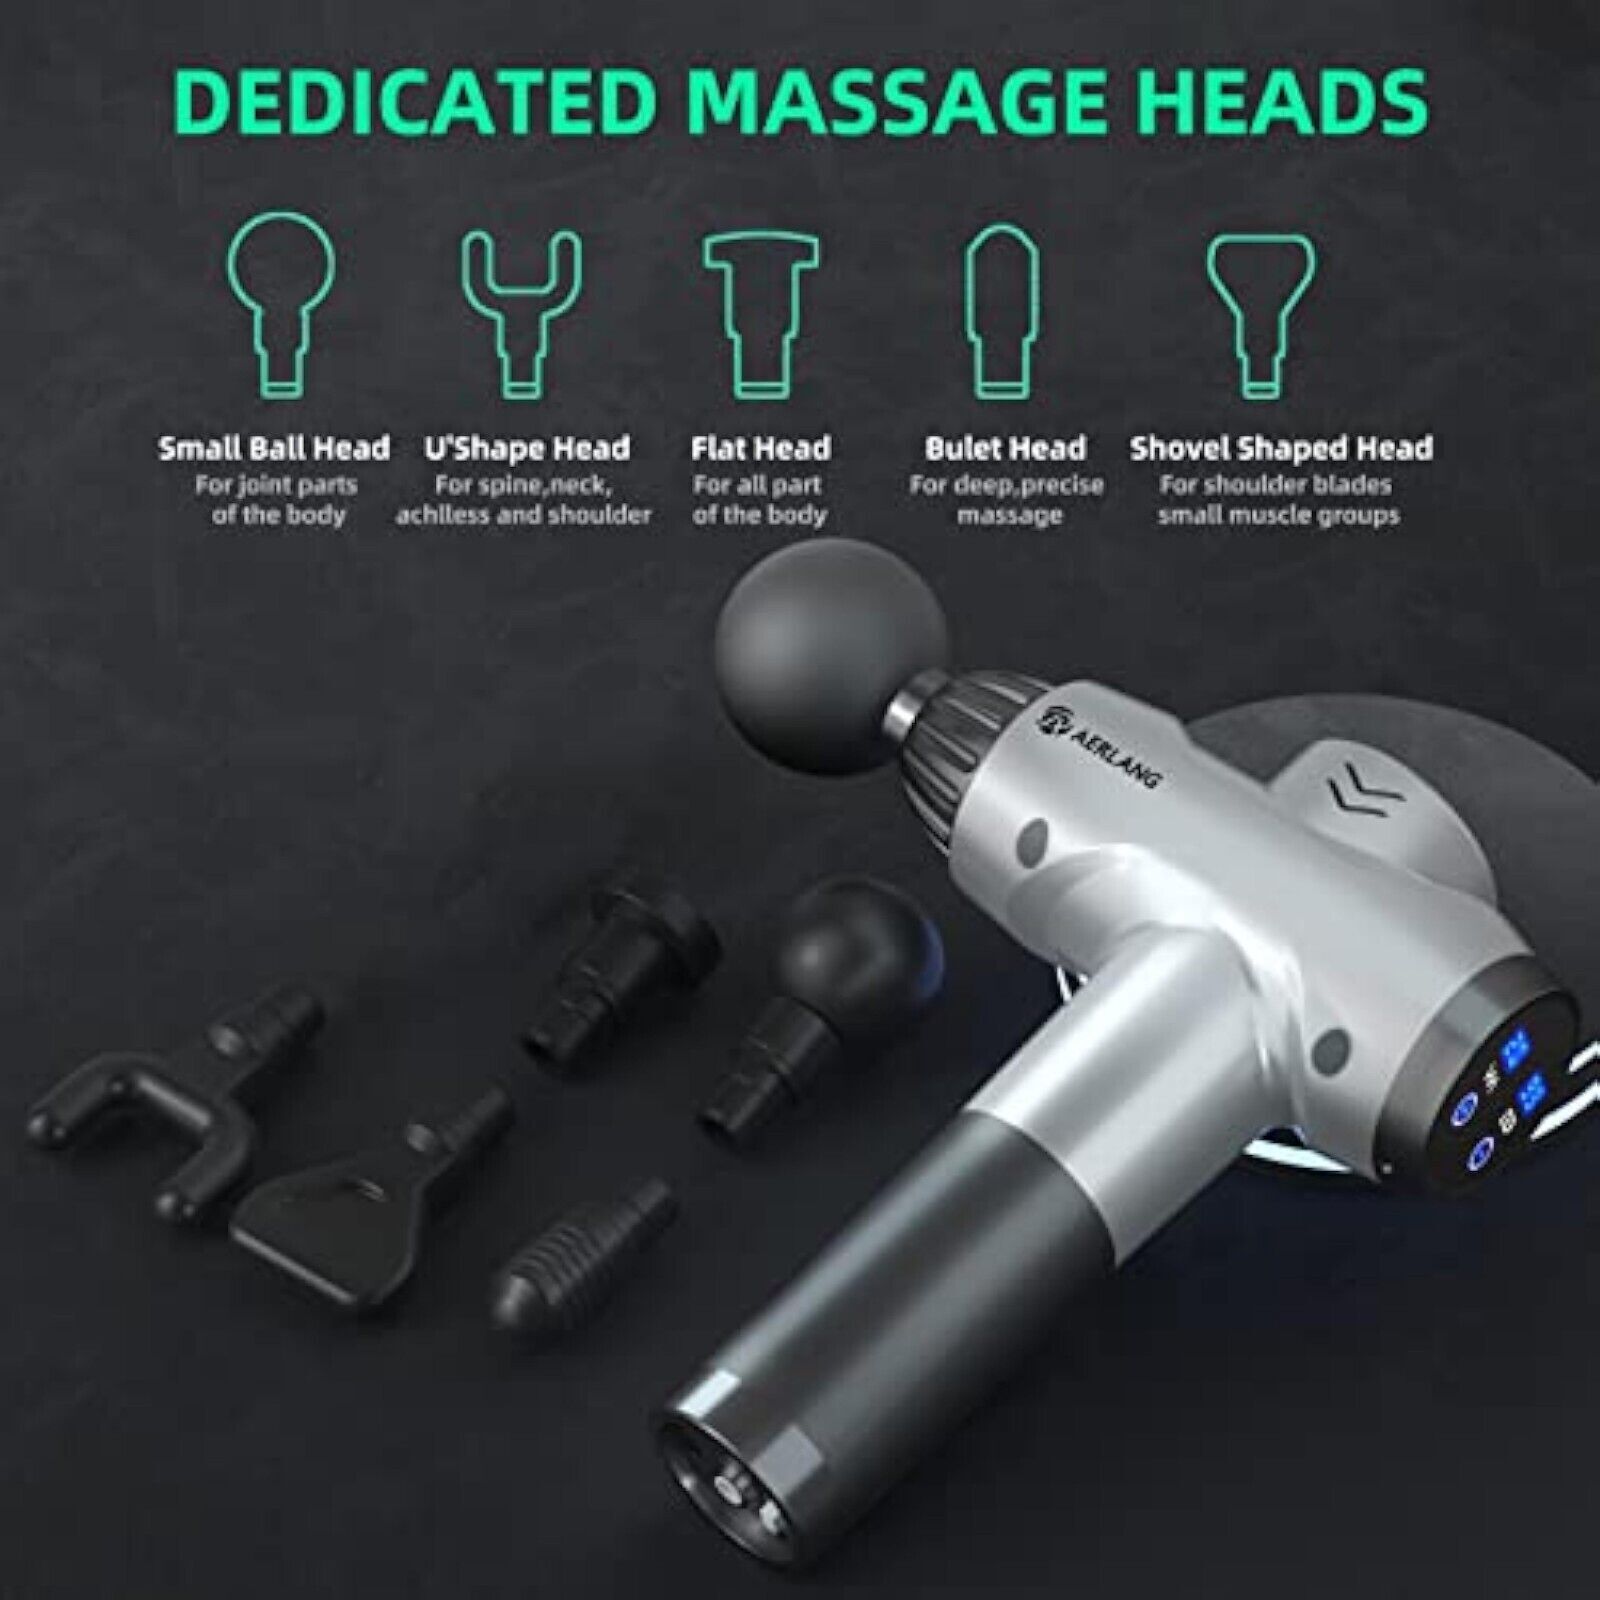 Elektrisches LCD Massagepistole Muskel Massage Gun mit 20 Modi + 6 Köpfen Handma